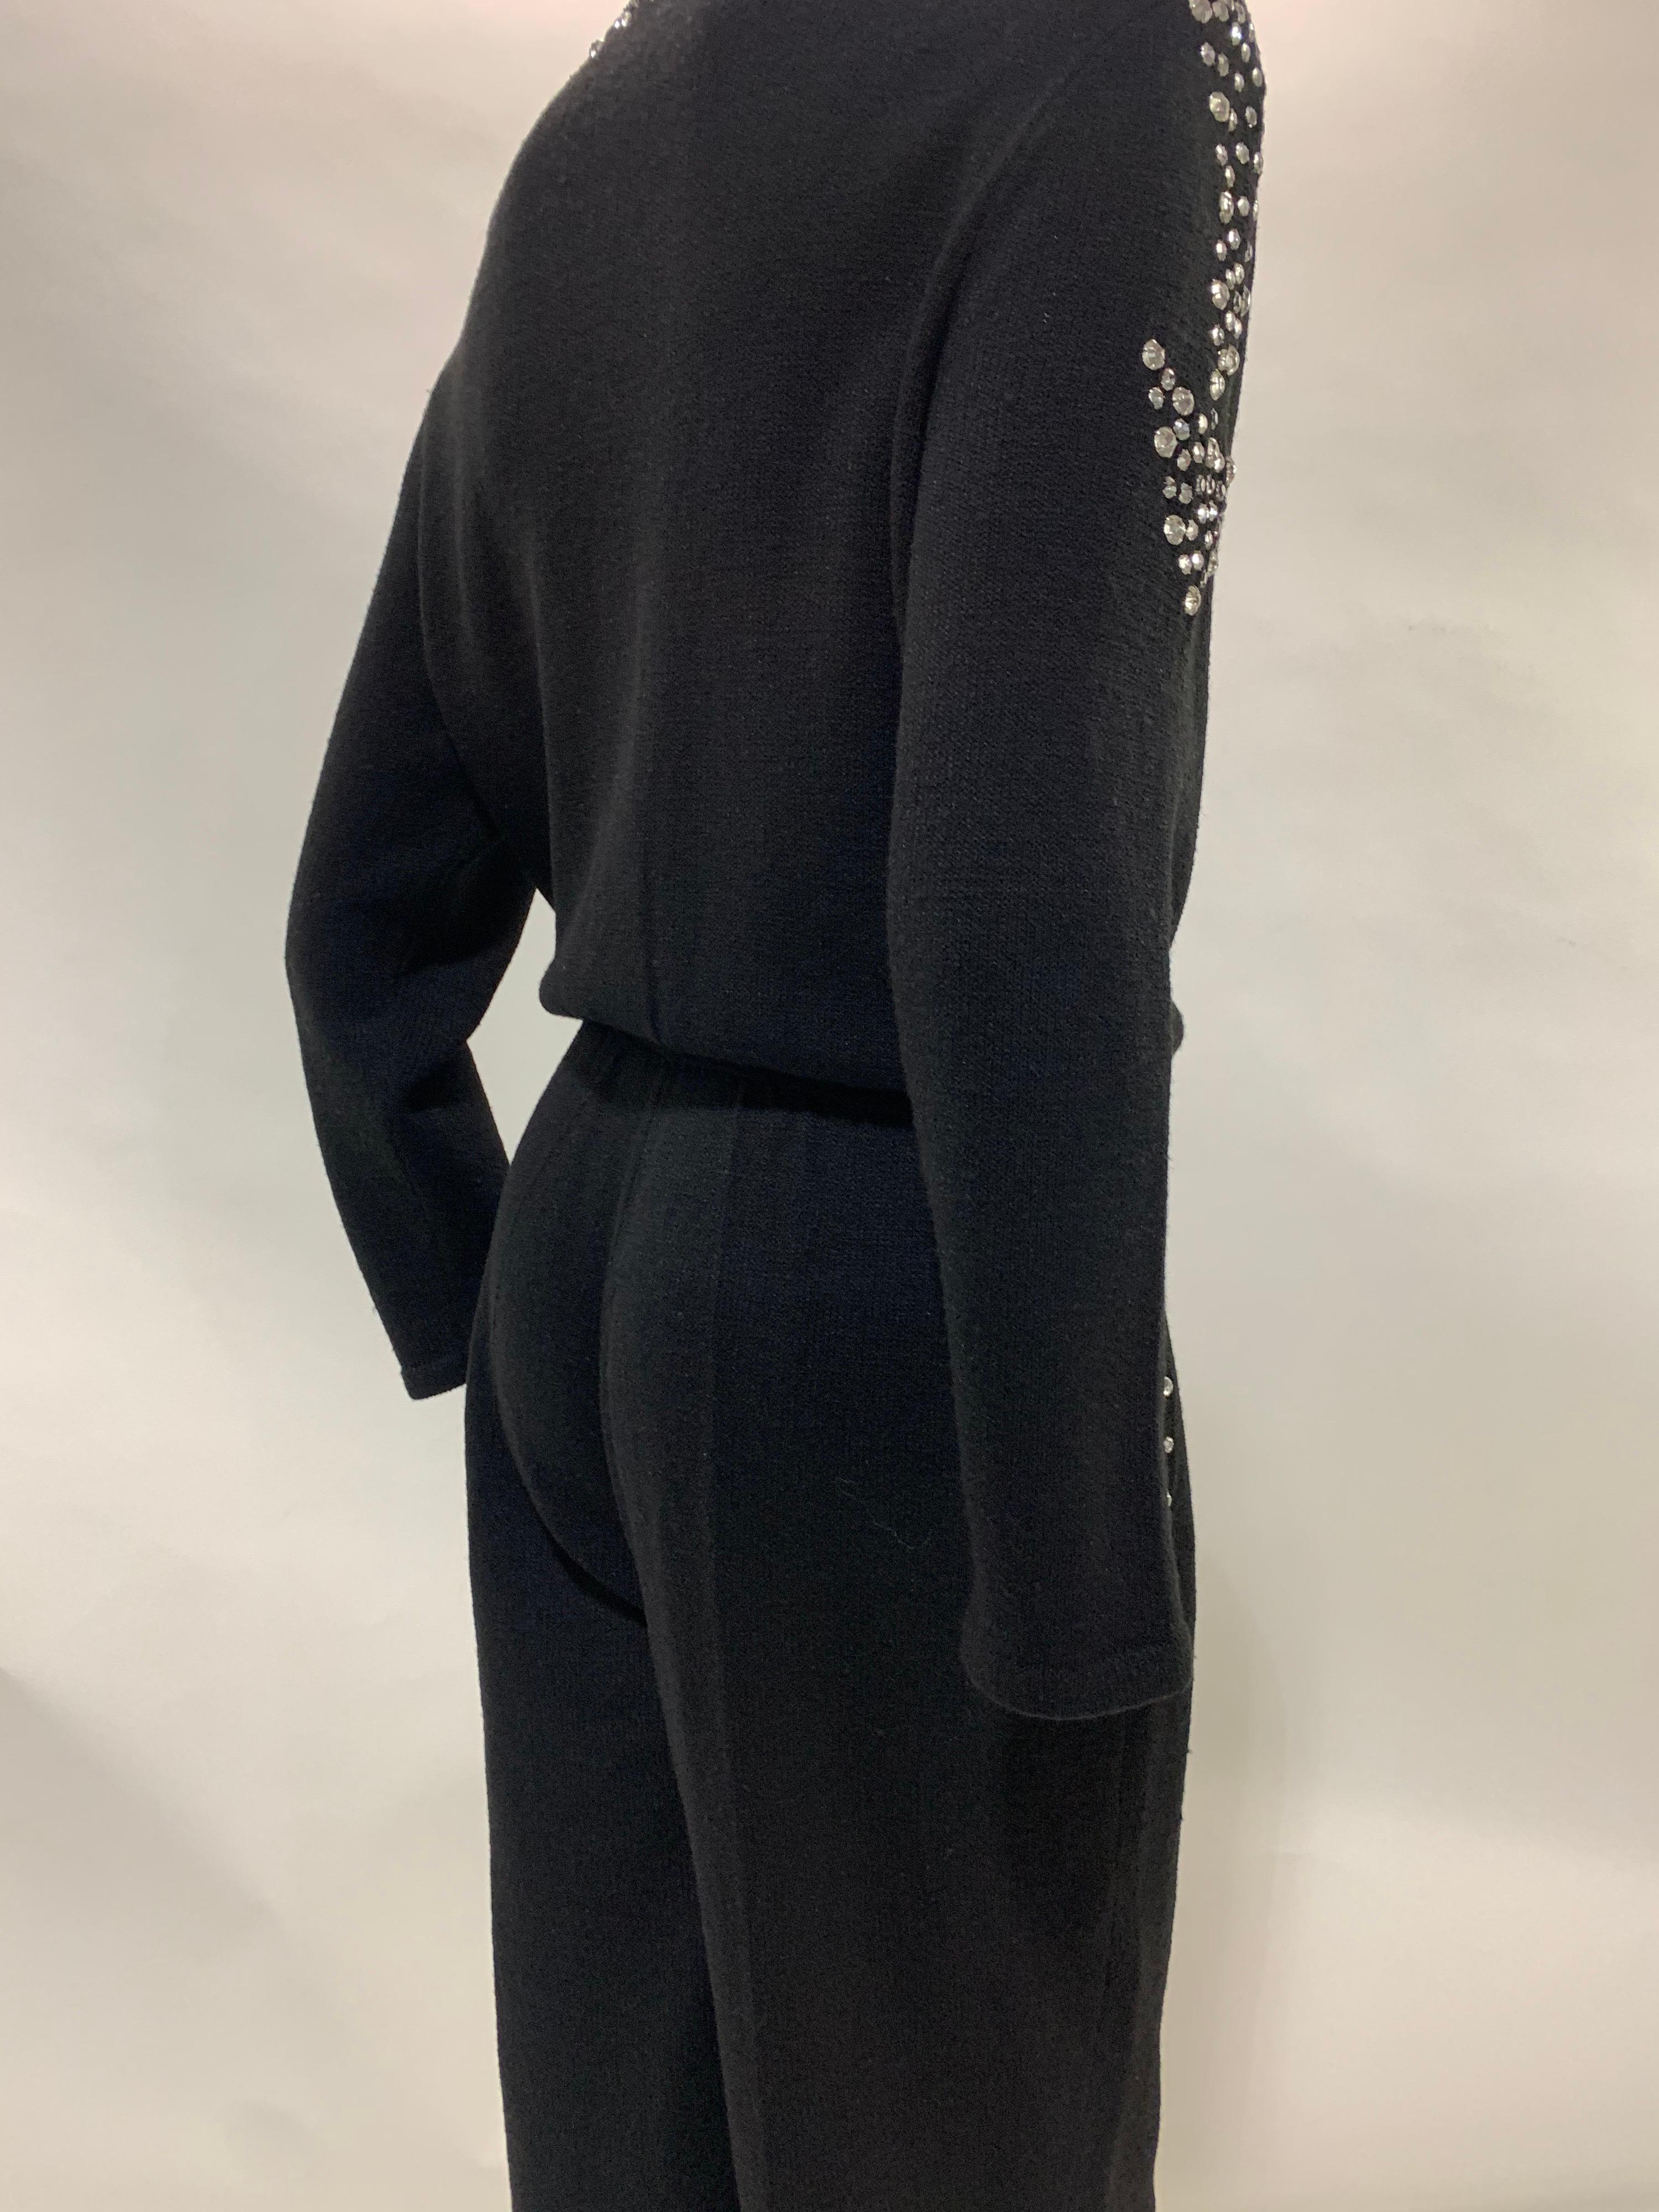 1980 Black Knit Jumpsuit w/ Structured Rhinestone Embellished Shoulder Arrows For Sale 6